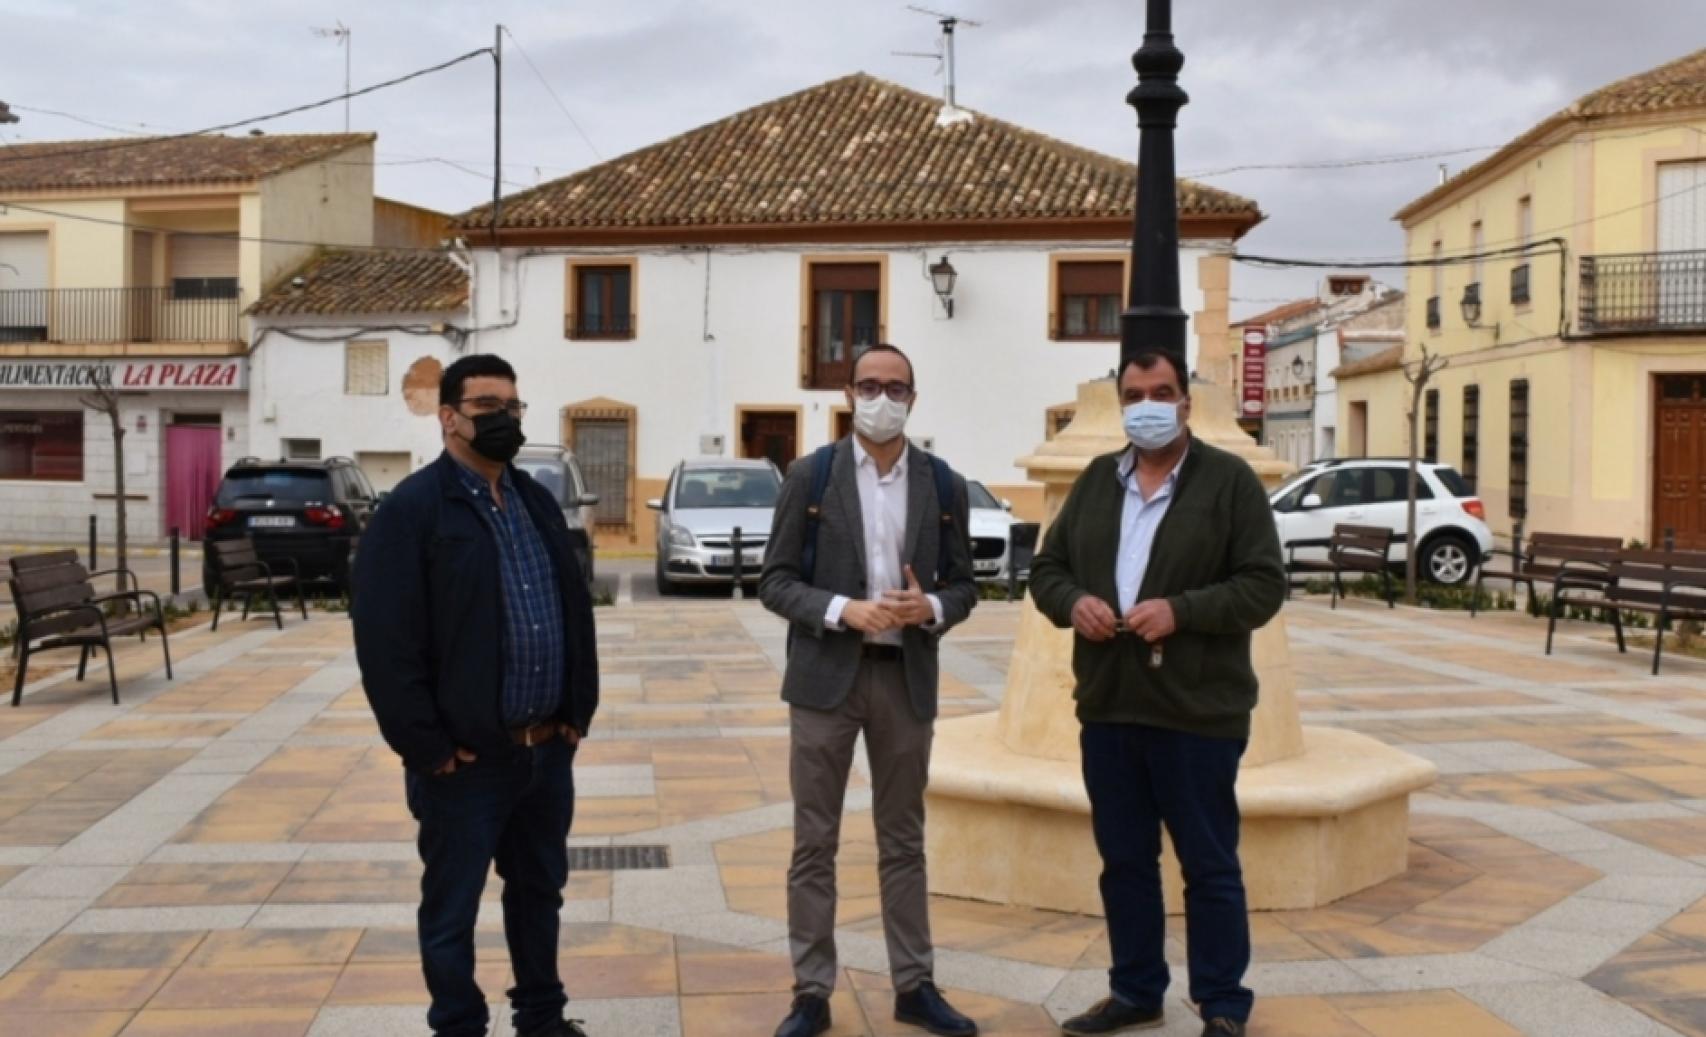 Miguel Escobar, teniente de alcalde; Fran Valera, vicepresidente de la Diputación, y José Luis Martínez, alcalde de Villalgordo, en la plaza.